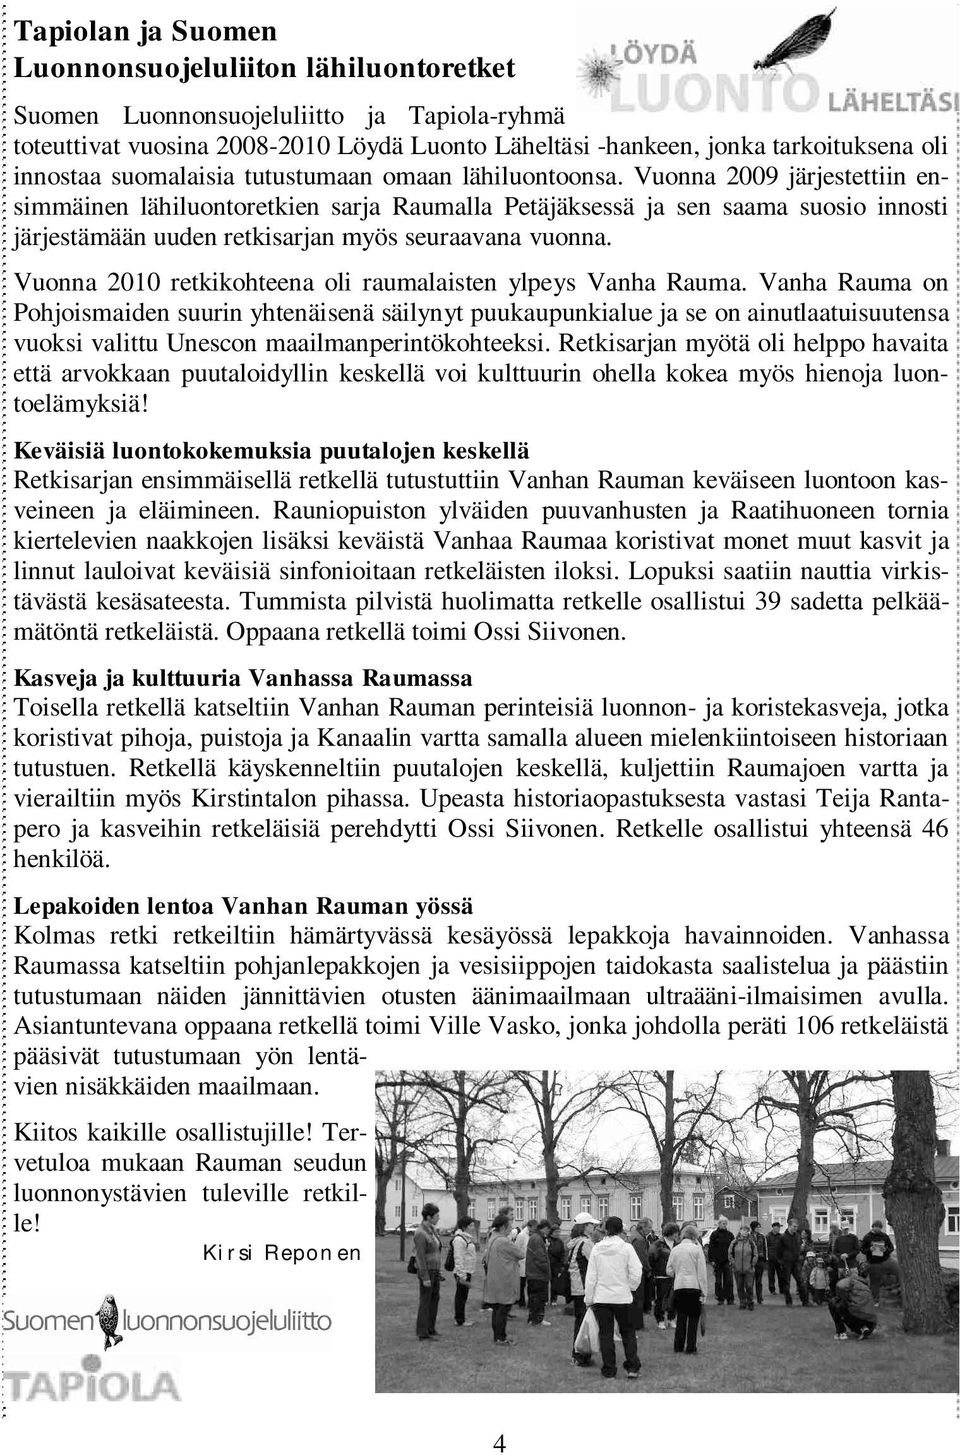 Vuonna 2009 järjestettiin ensimmäinen lähiluontoretkien sarja Raumalla Petäjäksessä ja sen saama suosio innosti järjestämään uuden retkisarjan myös seuraavana vuonna.